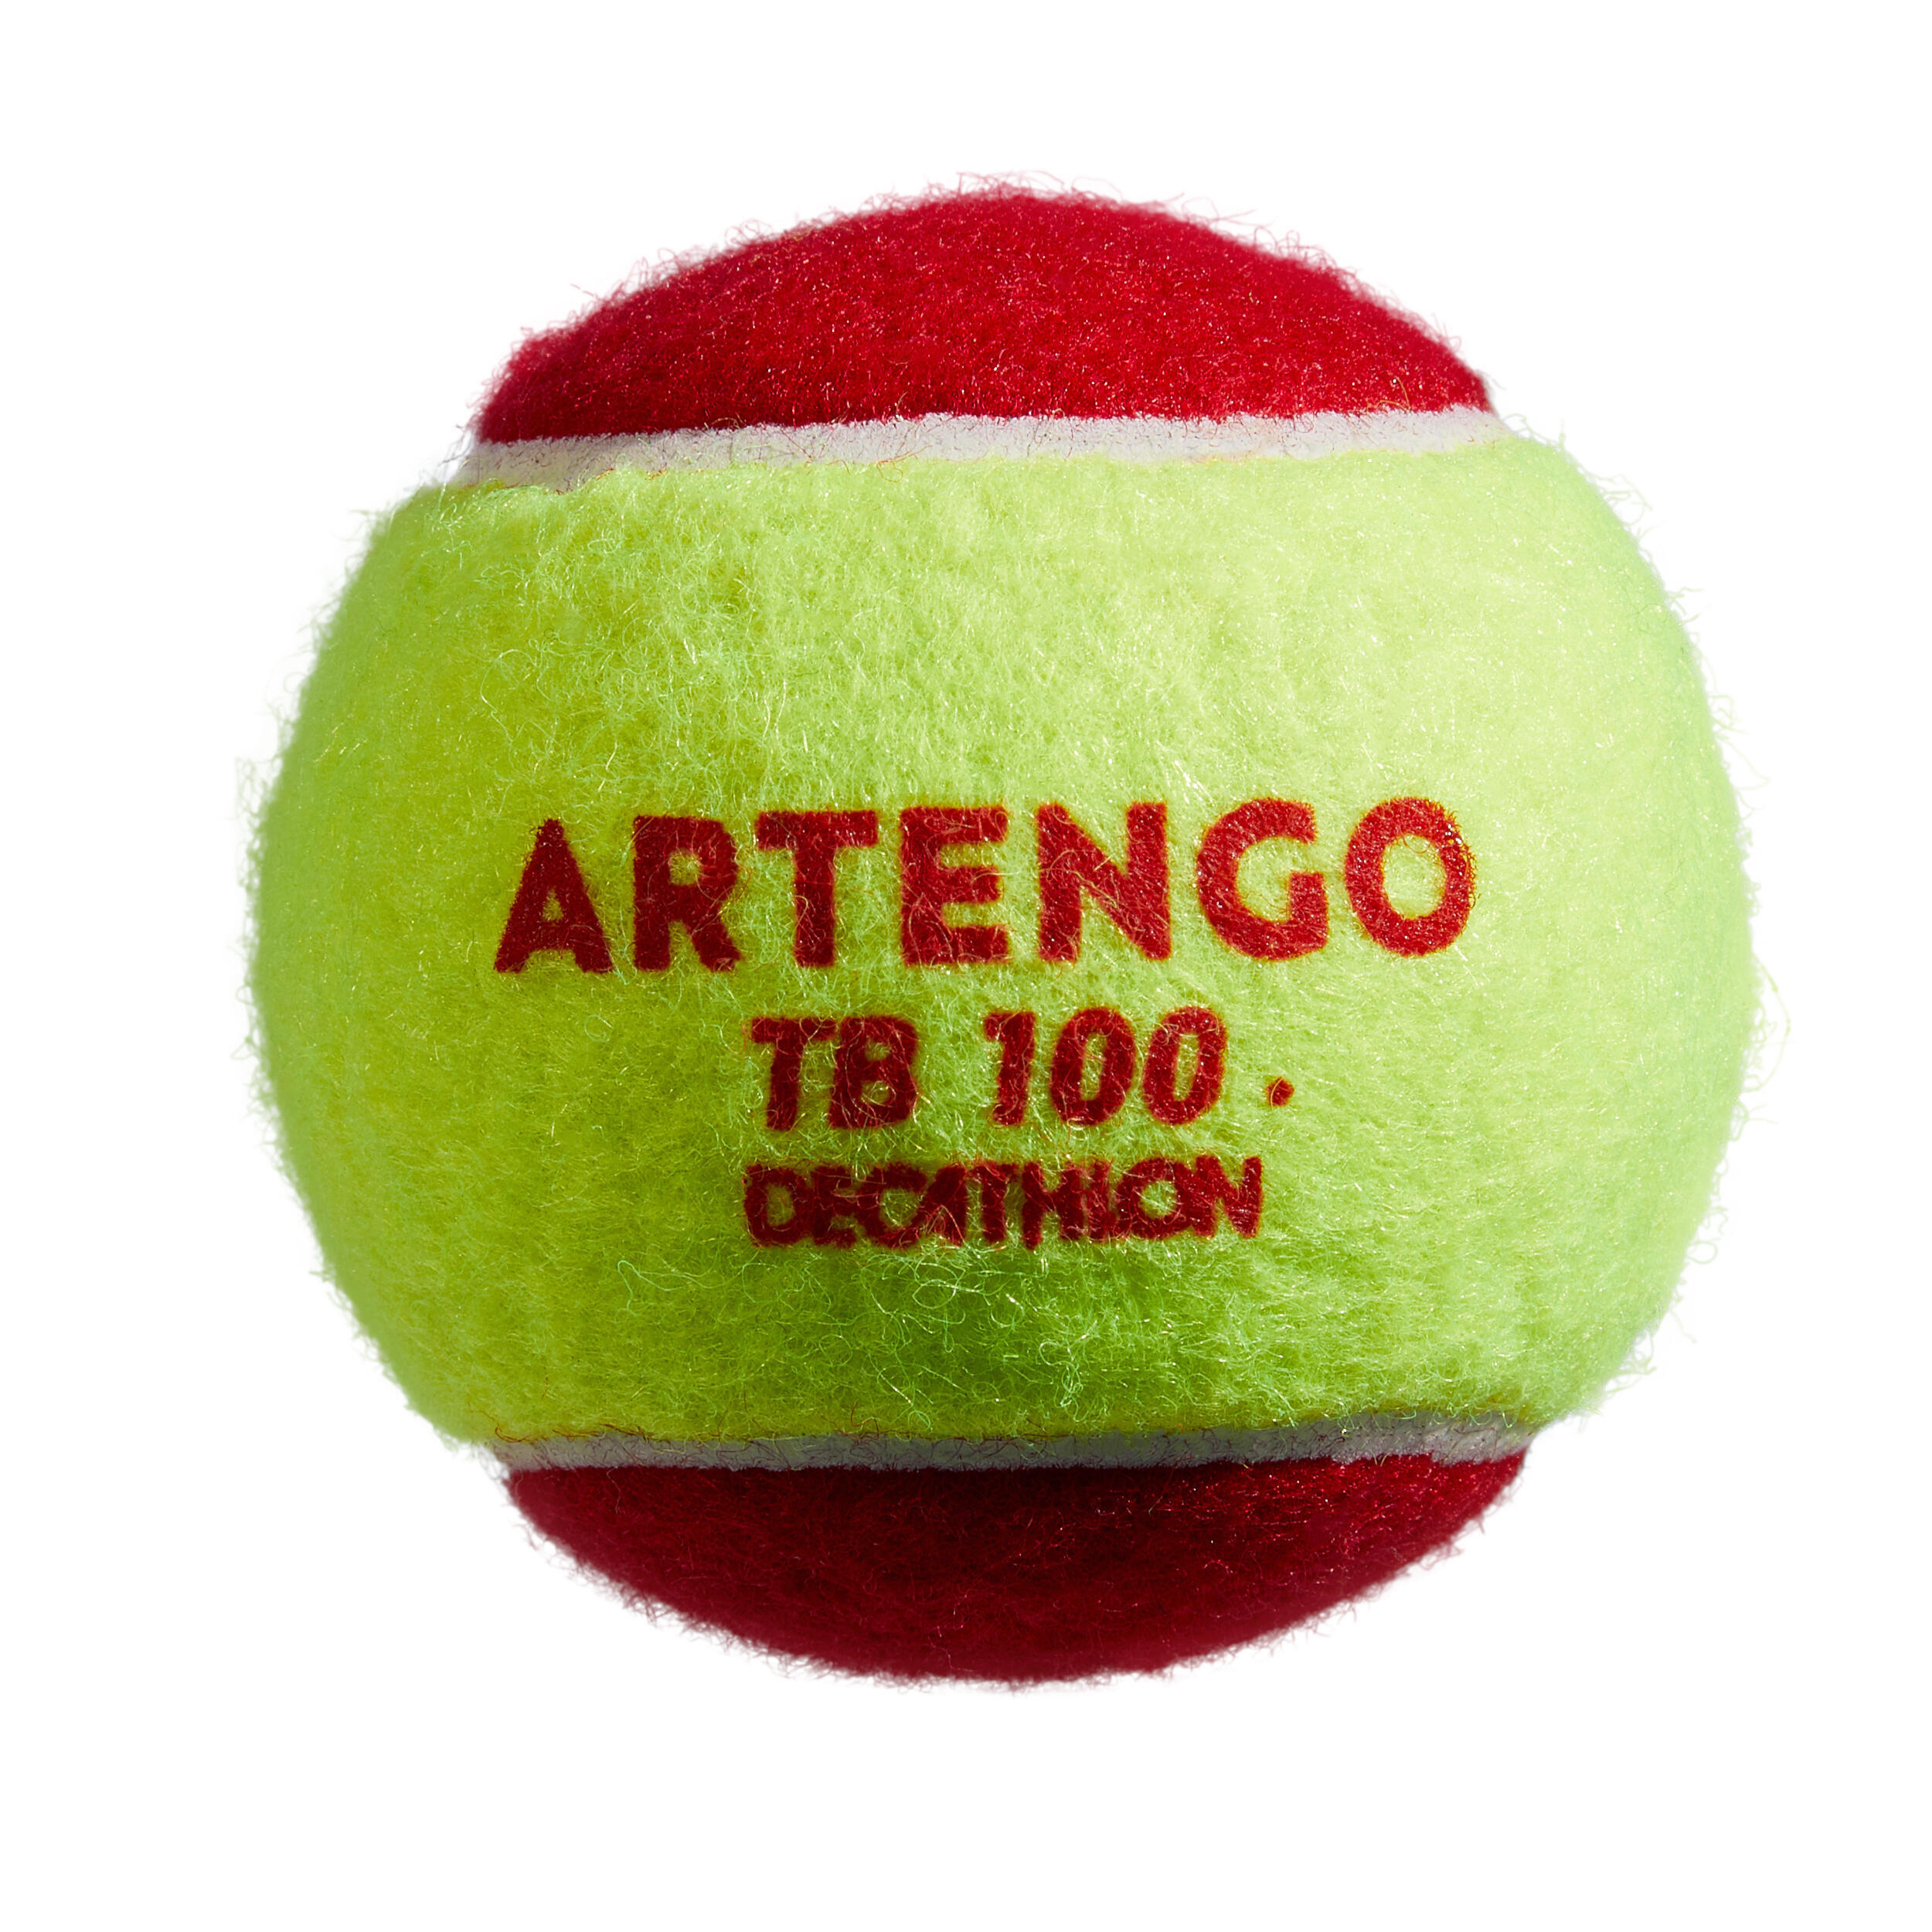 Tennis Ball TB100*3 - Red 4/6